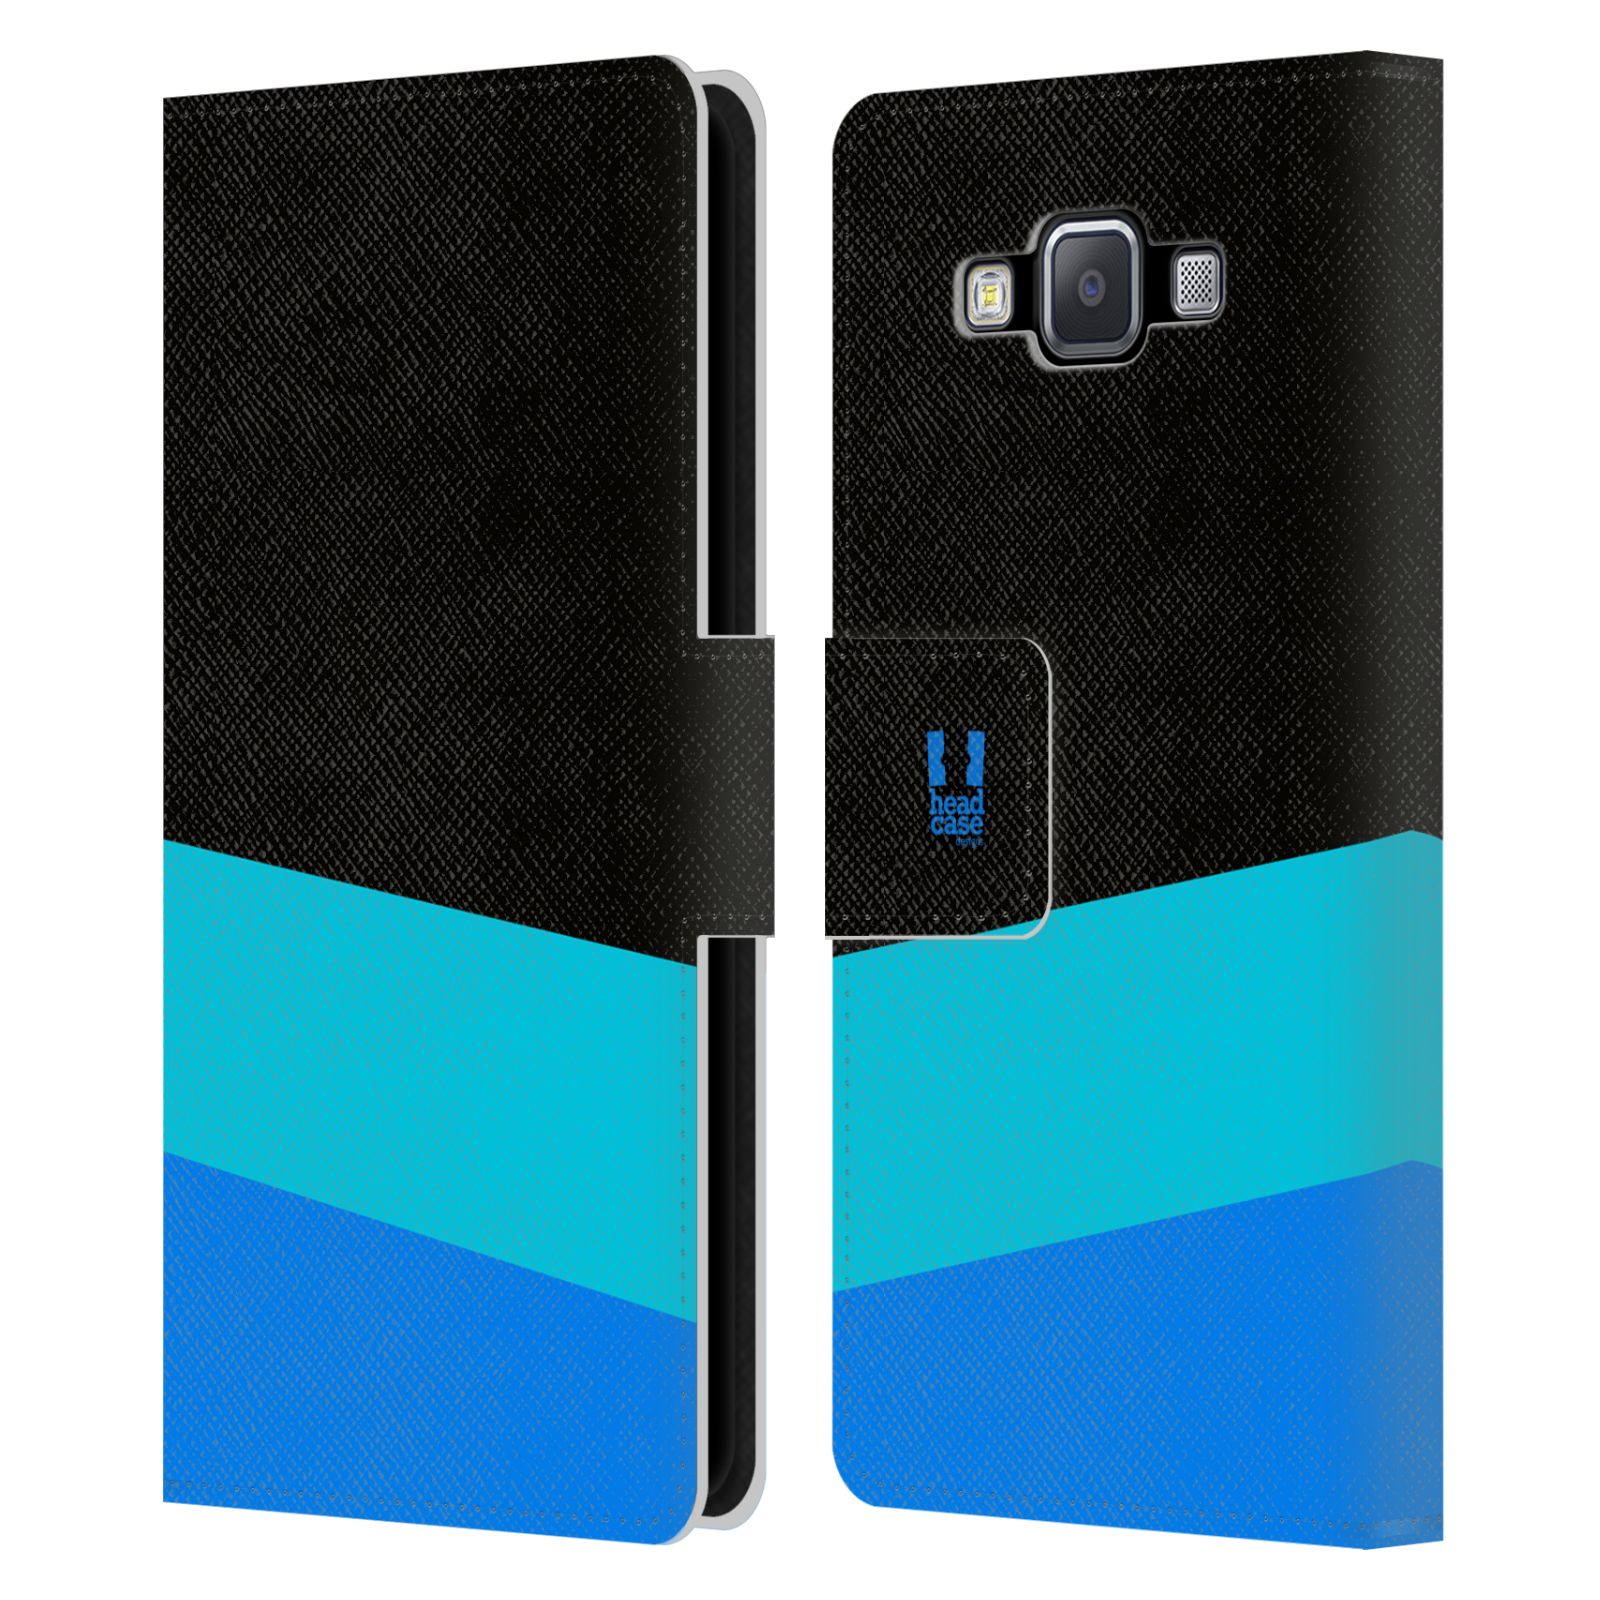 HEAD CASE Flipové pouzdro pro mobil Samsung Galaxy A5 barevné tvary modrá a černá FORMAL